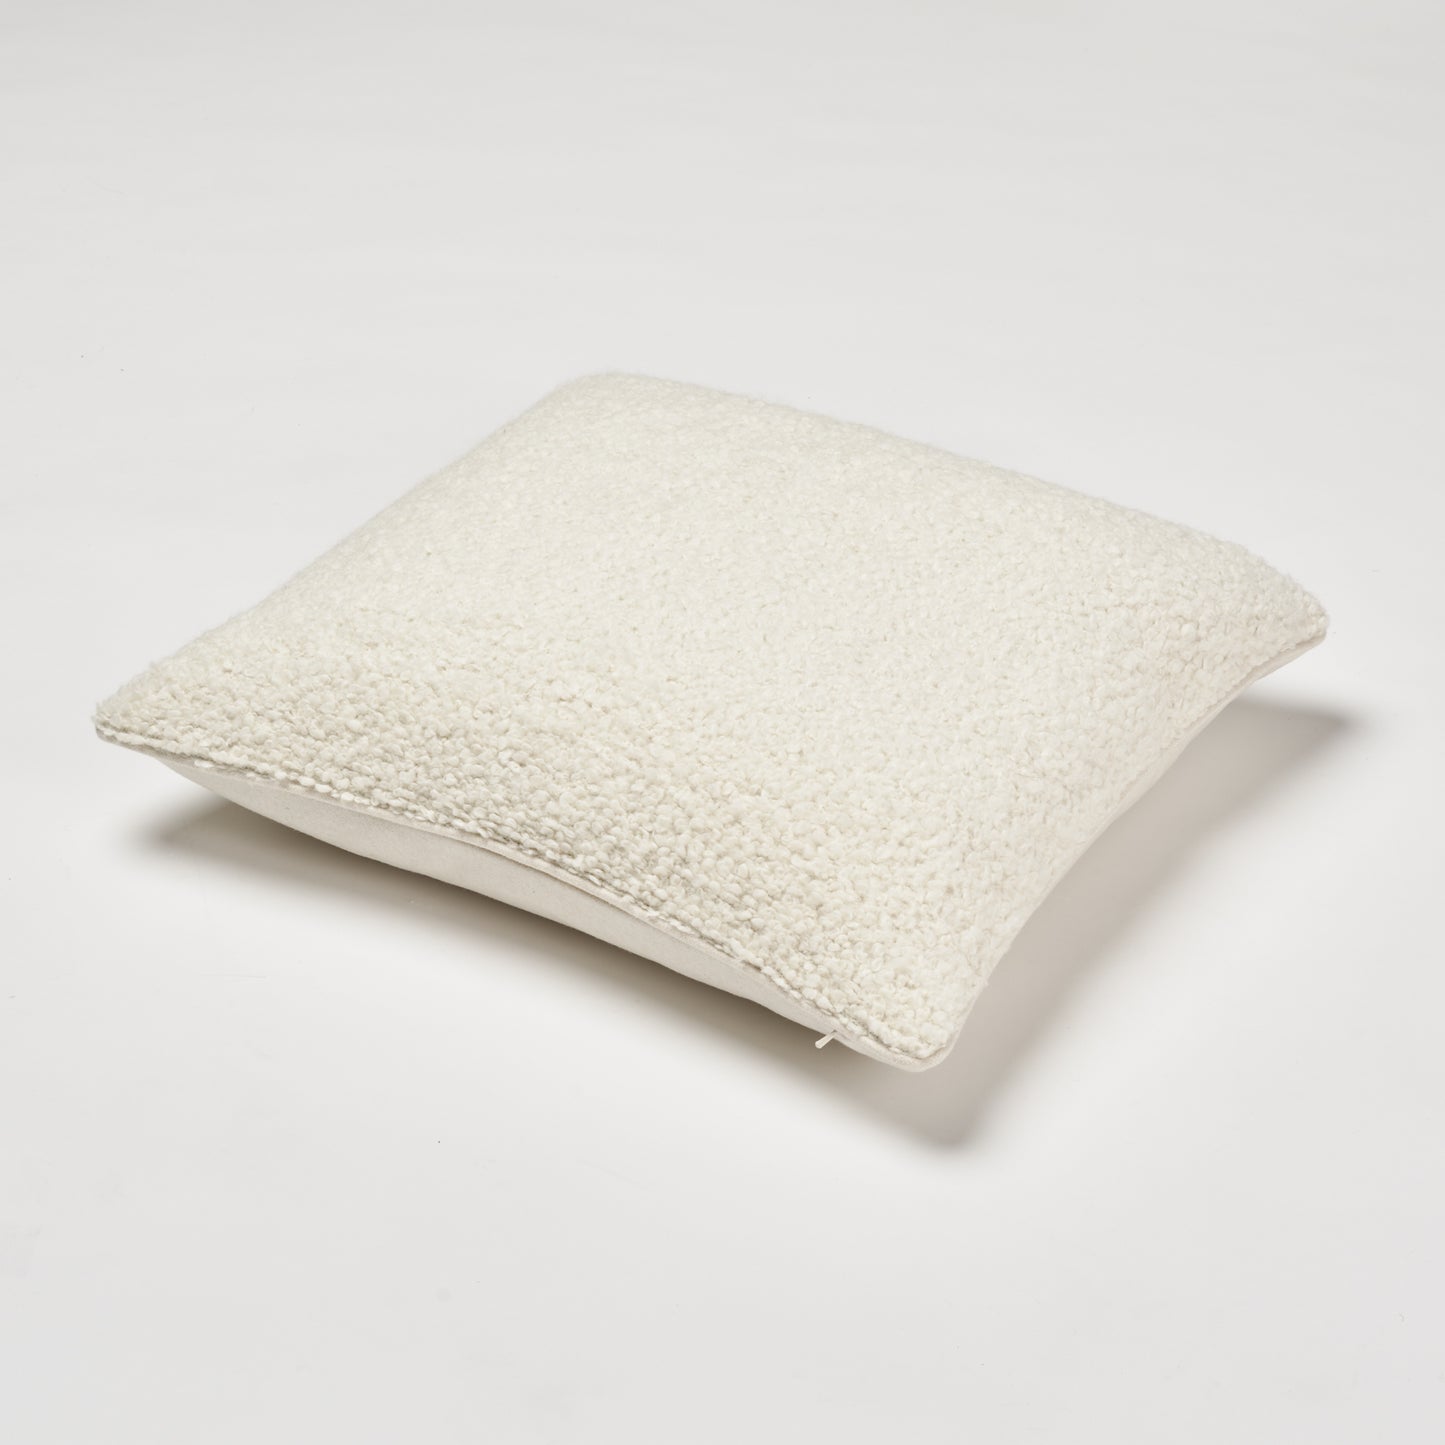 Luxe Pillow 22"x22"